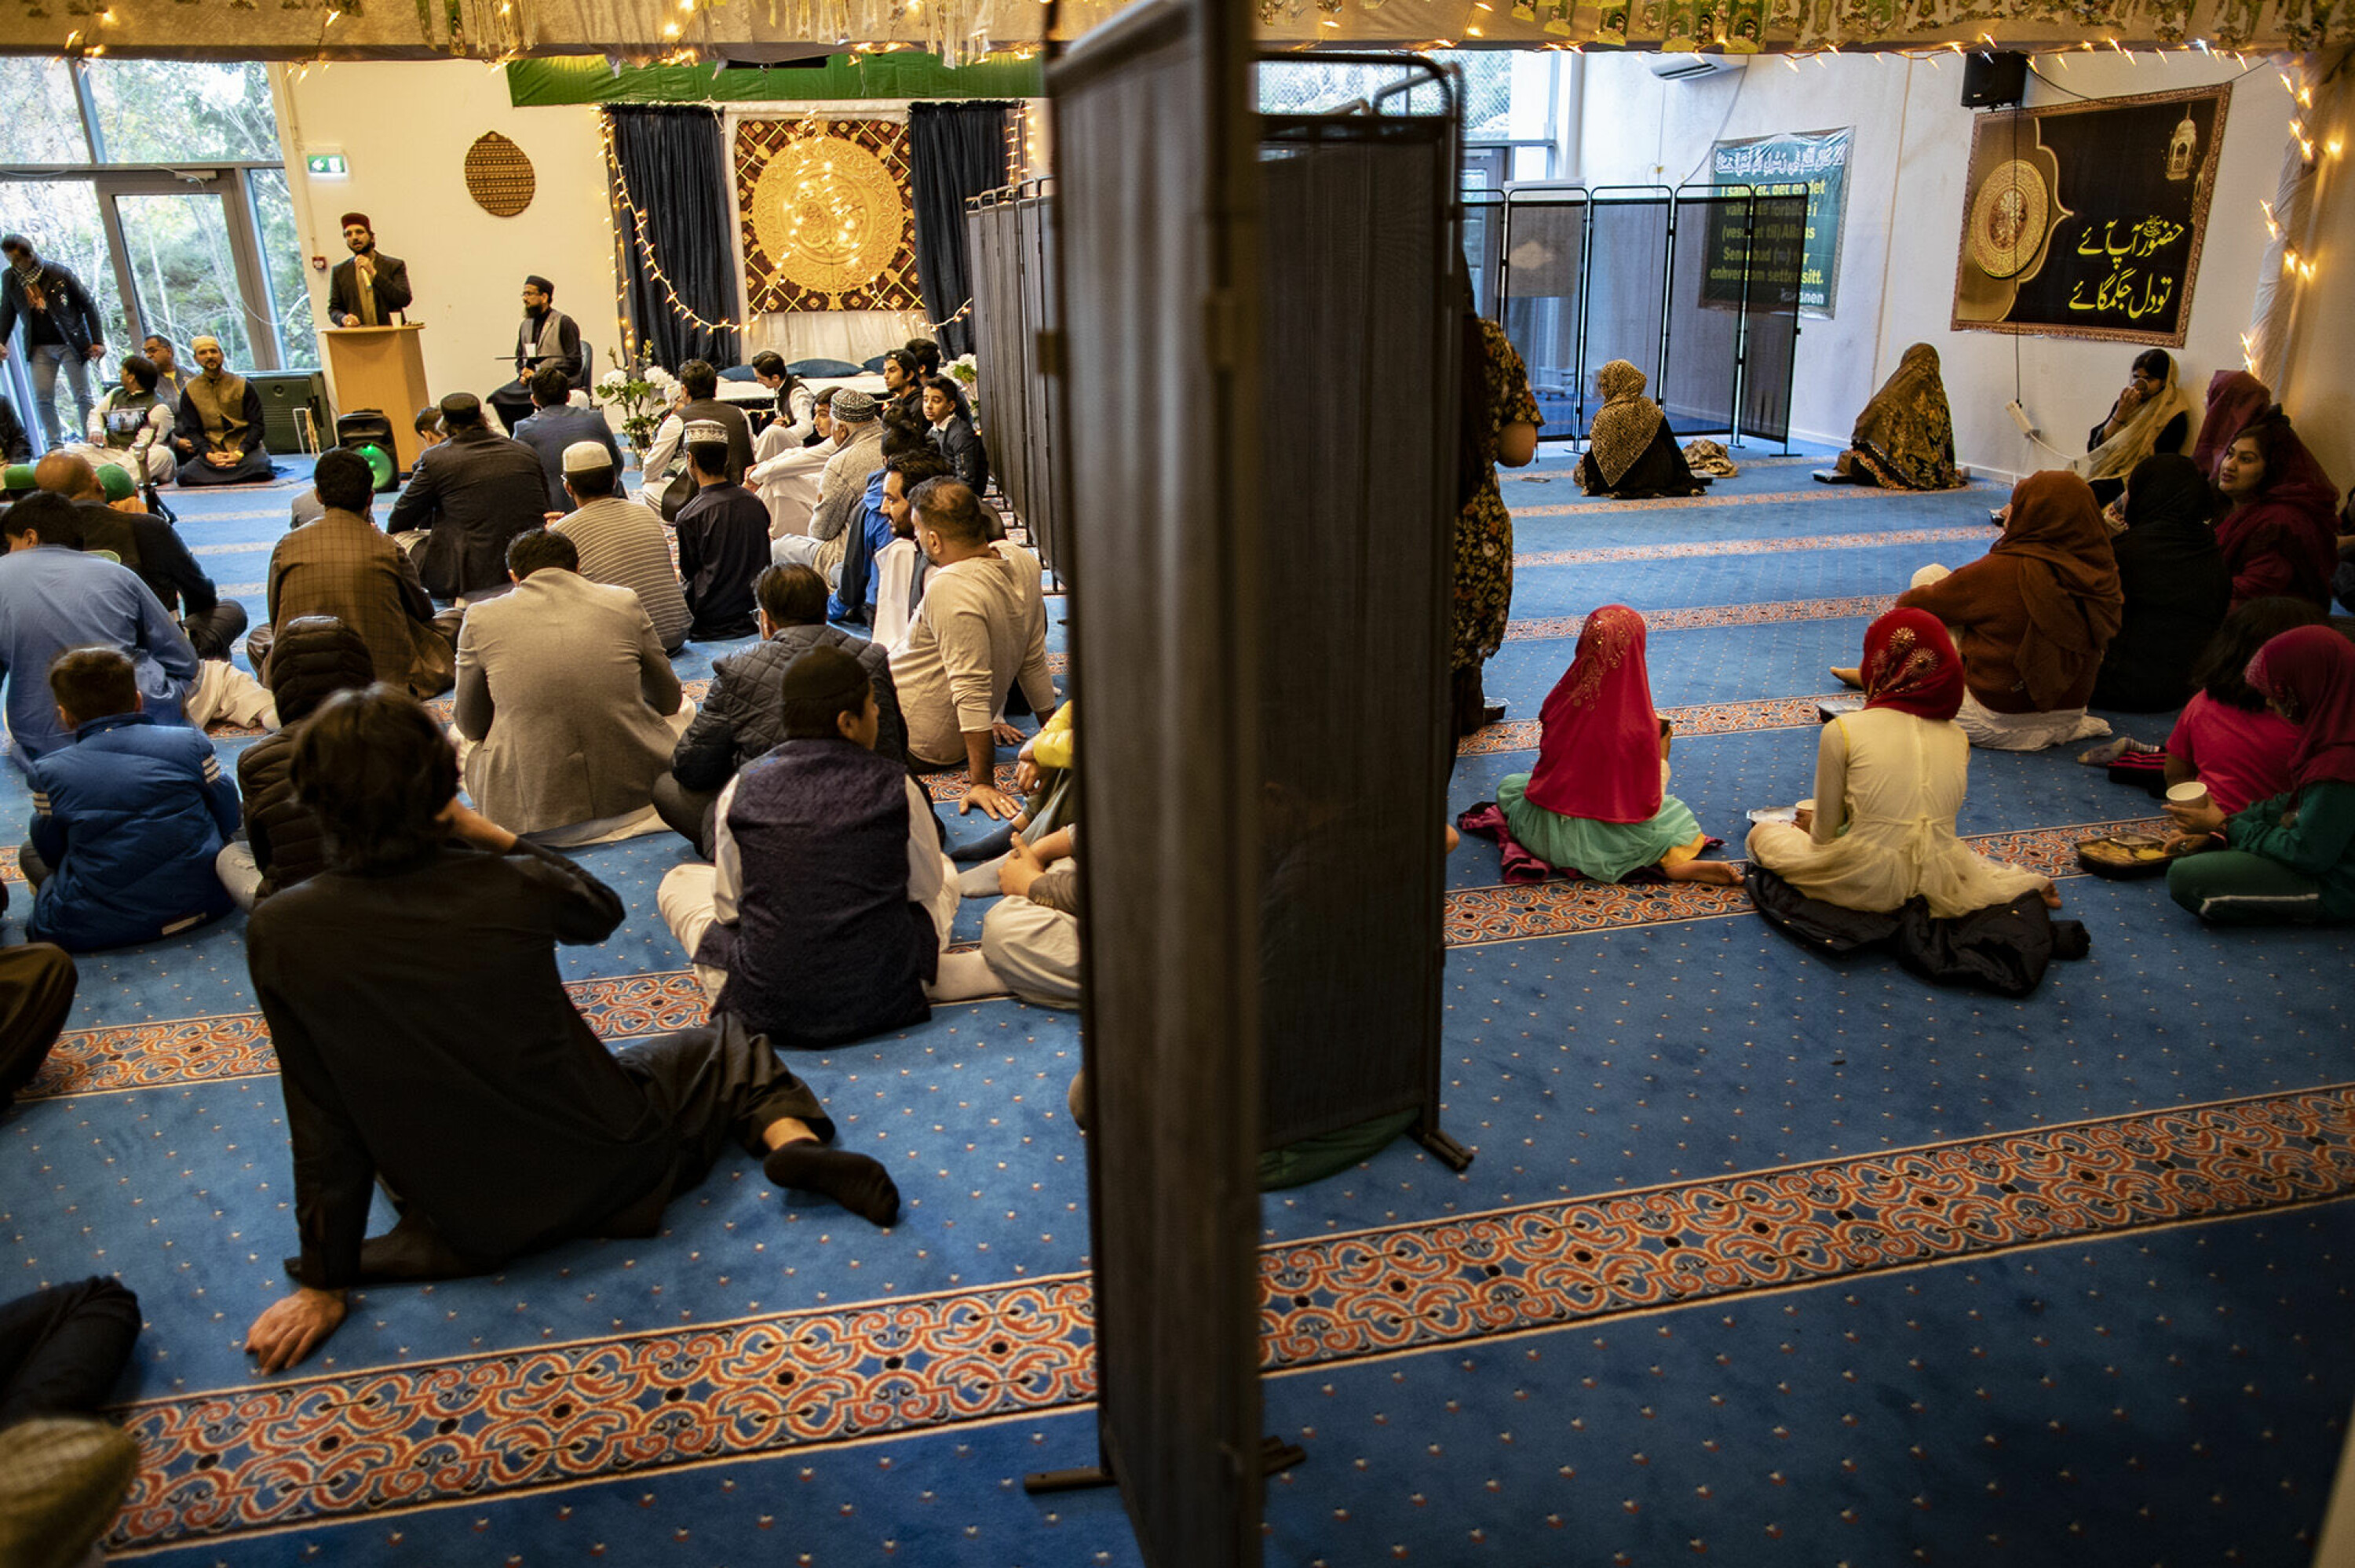 KVINNER BAK FORHENGET: Moskeen er adskilt under bønnen med menn til venstre foran imamen, mens kvinnene blir henvist til høyre bak forhenget.